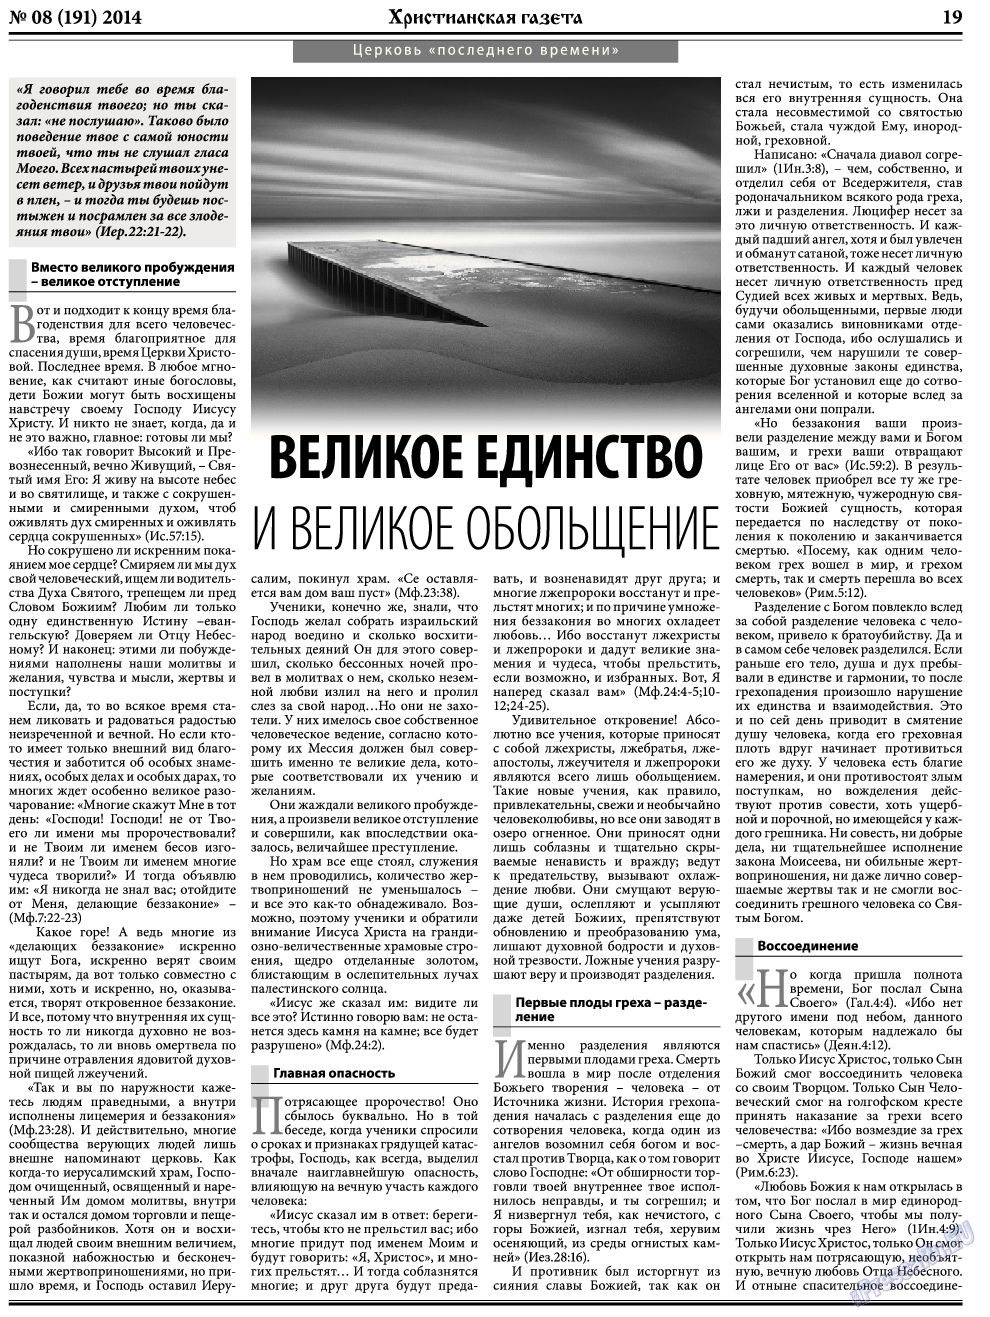 Христианская газета, газета. 2014 №8 стр.27